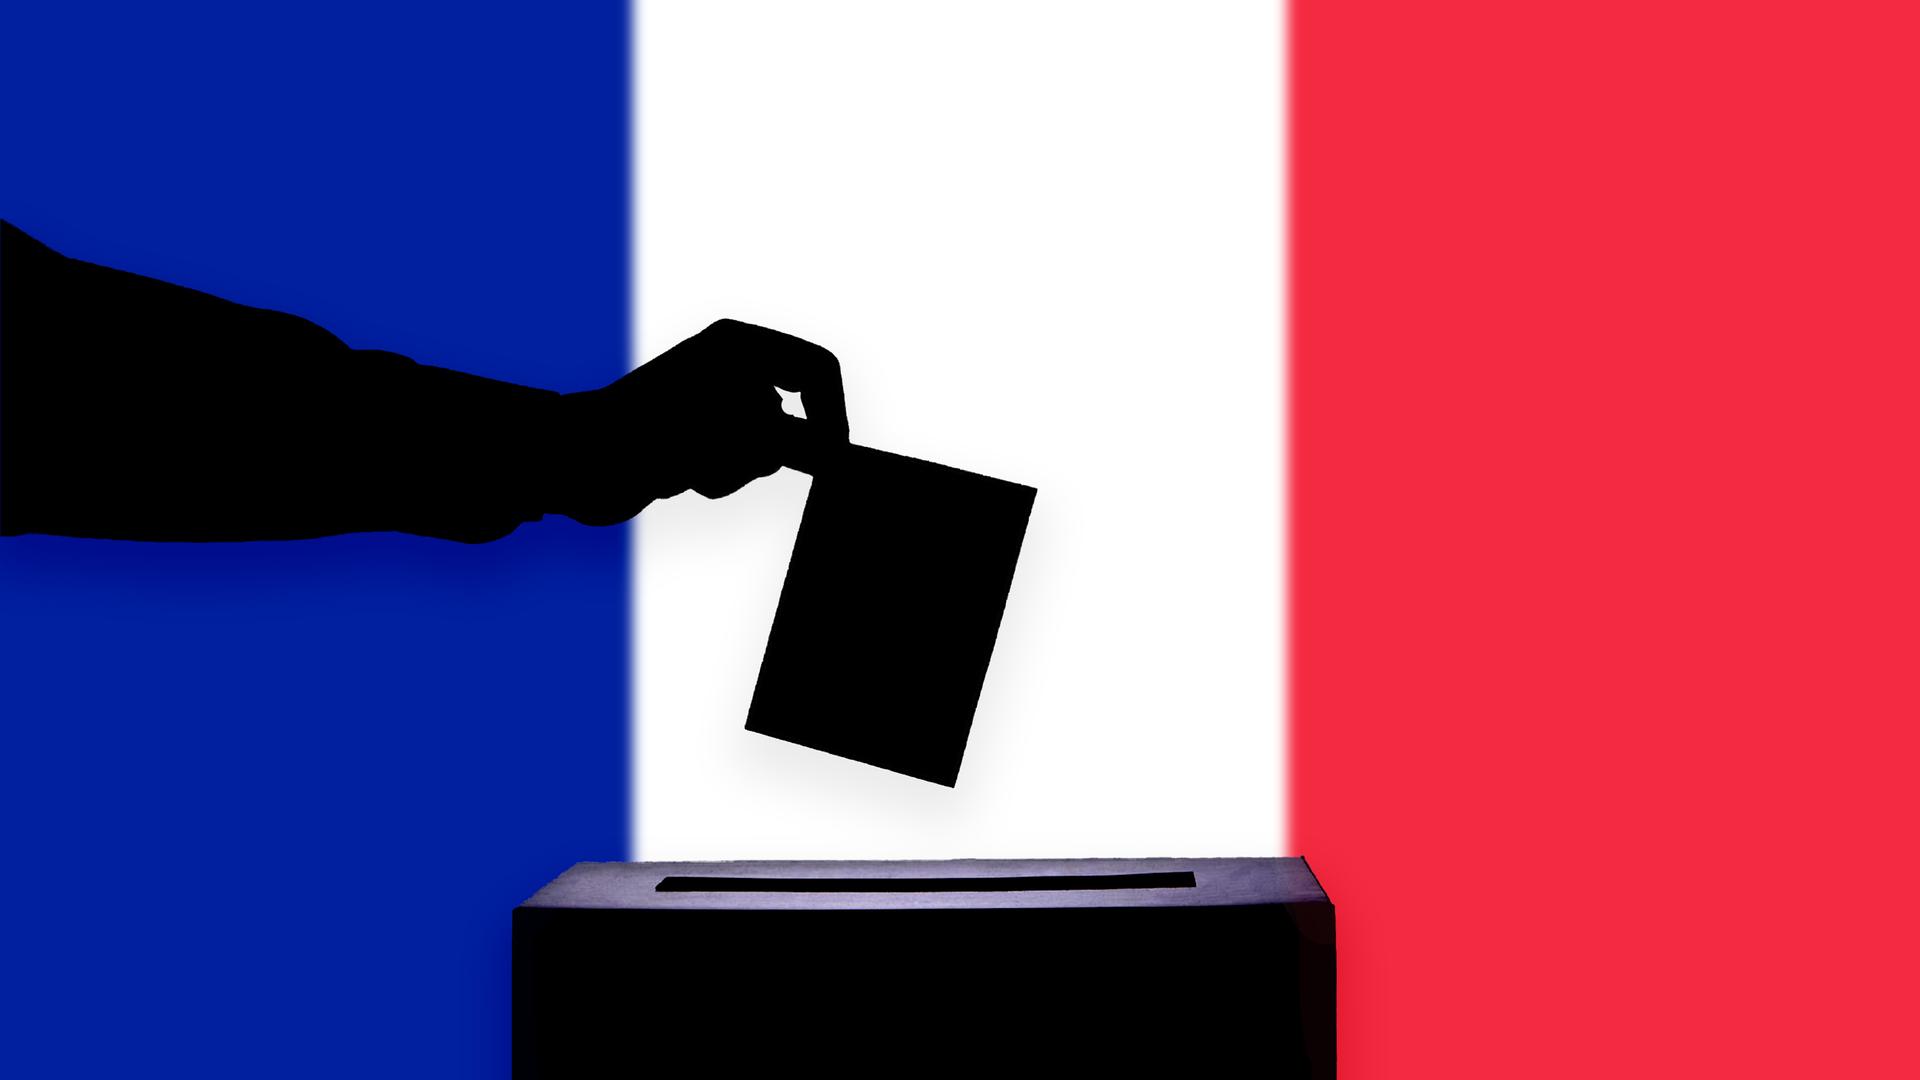 Vor der französischen Flagge wirft eine Hand einen Stimmzettel in eine Wahlurne. Hand, Stimmzettel und Wahlurne sind nur als Schatten zu sehen.